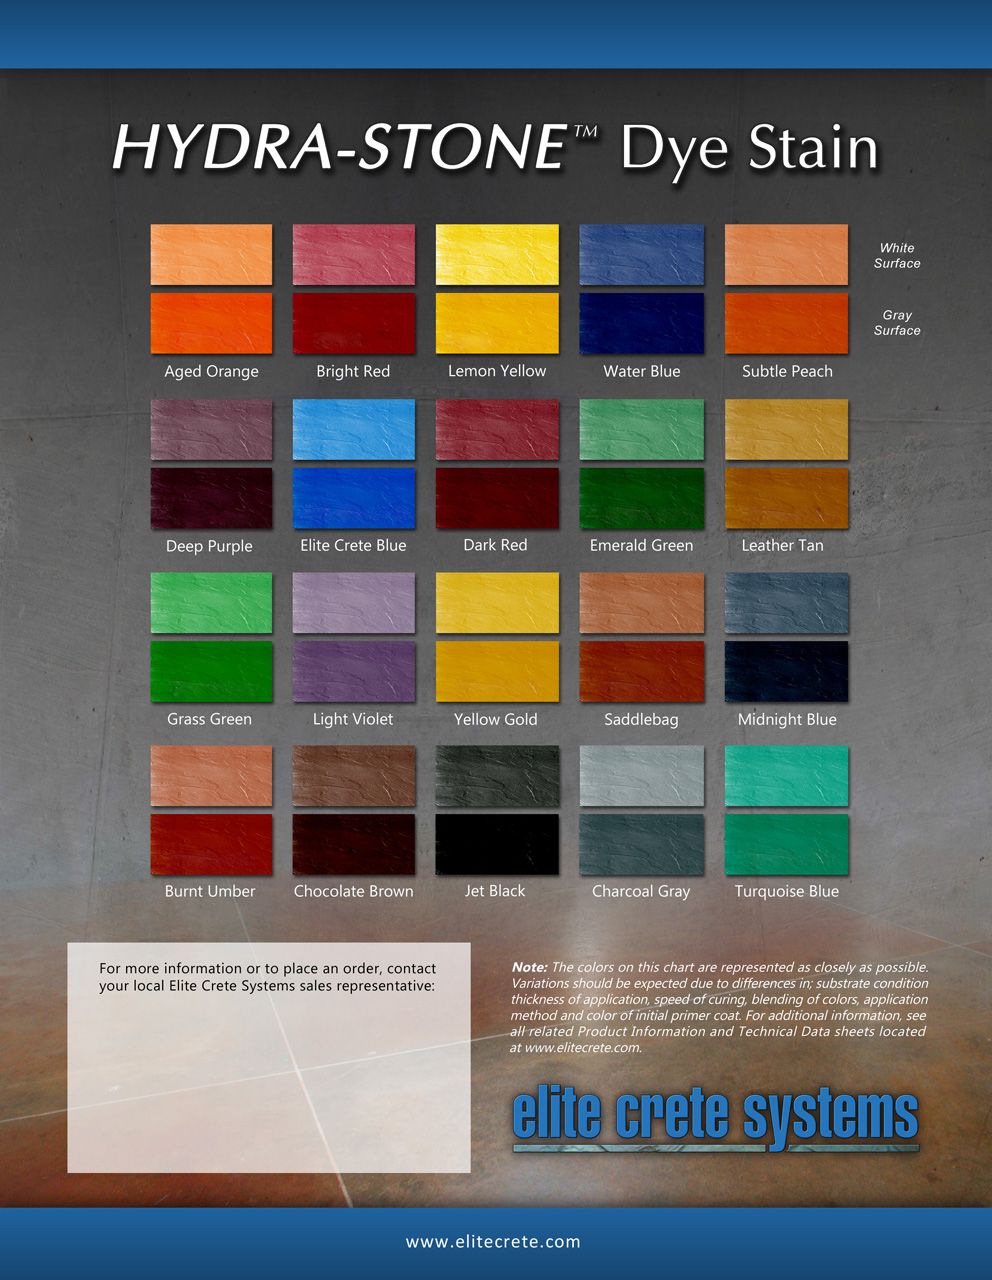 Hydra-Stone Dye Stain